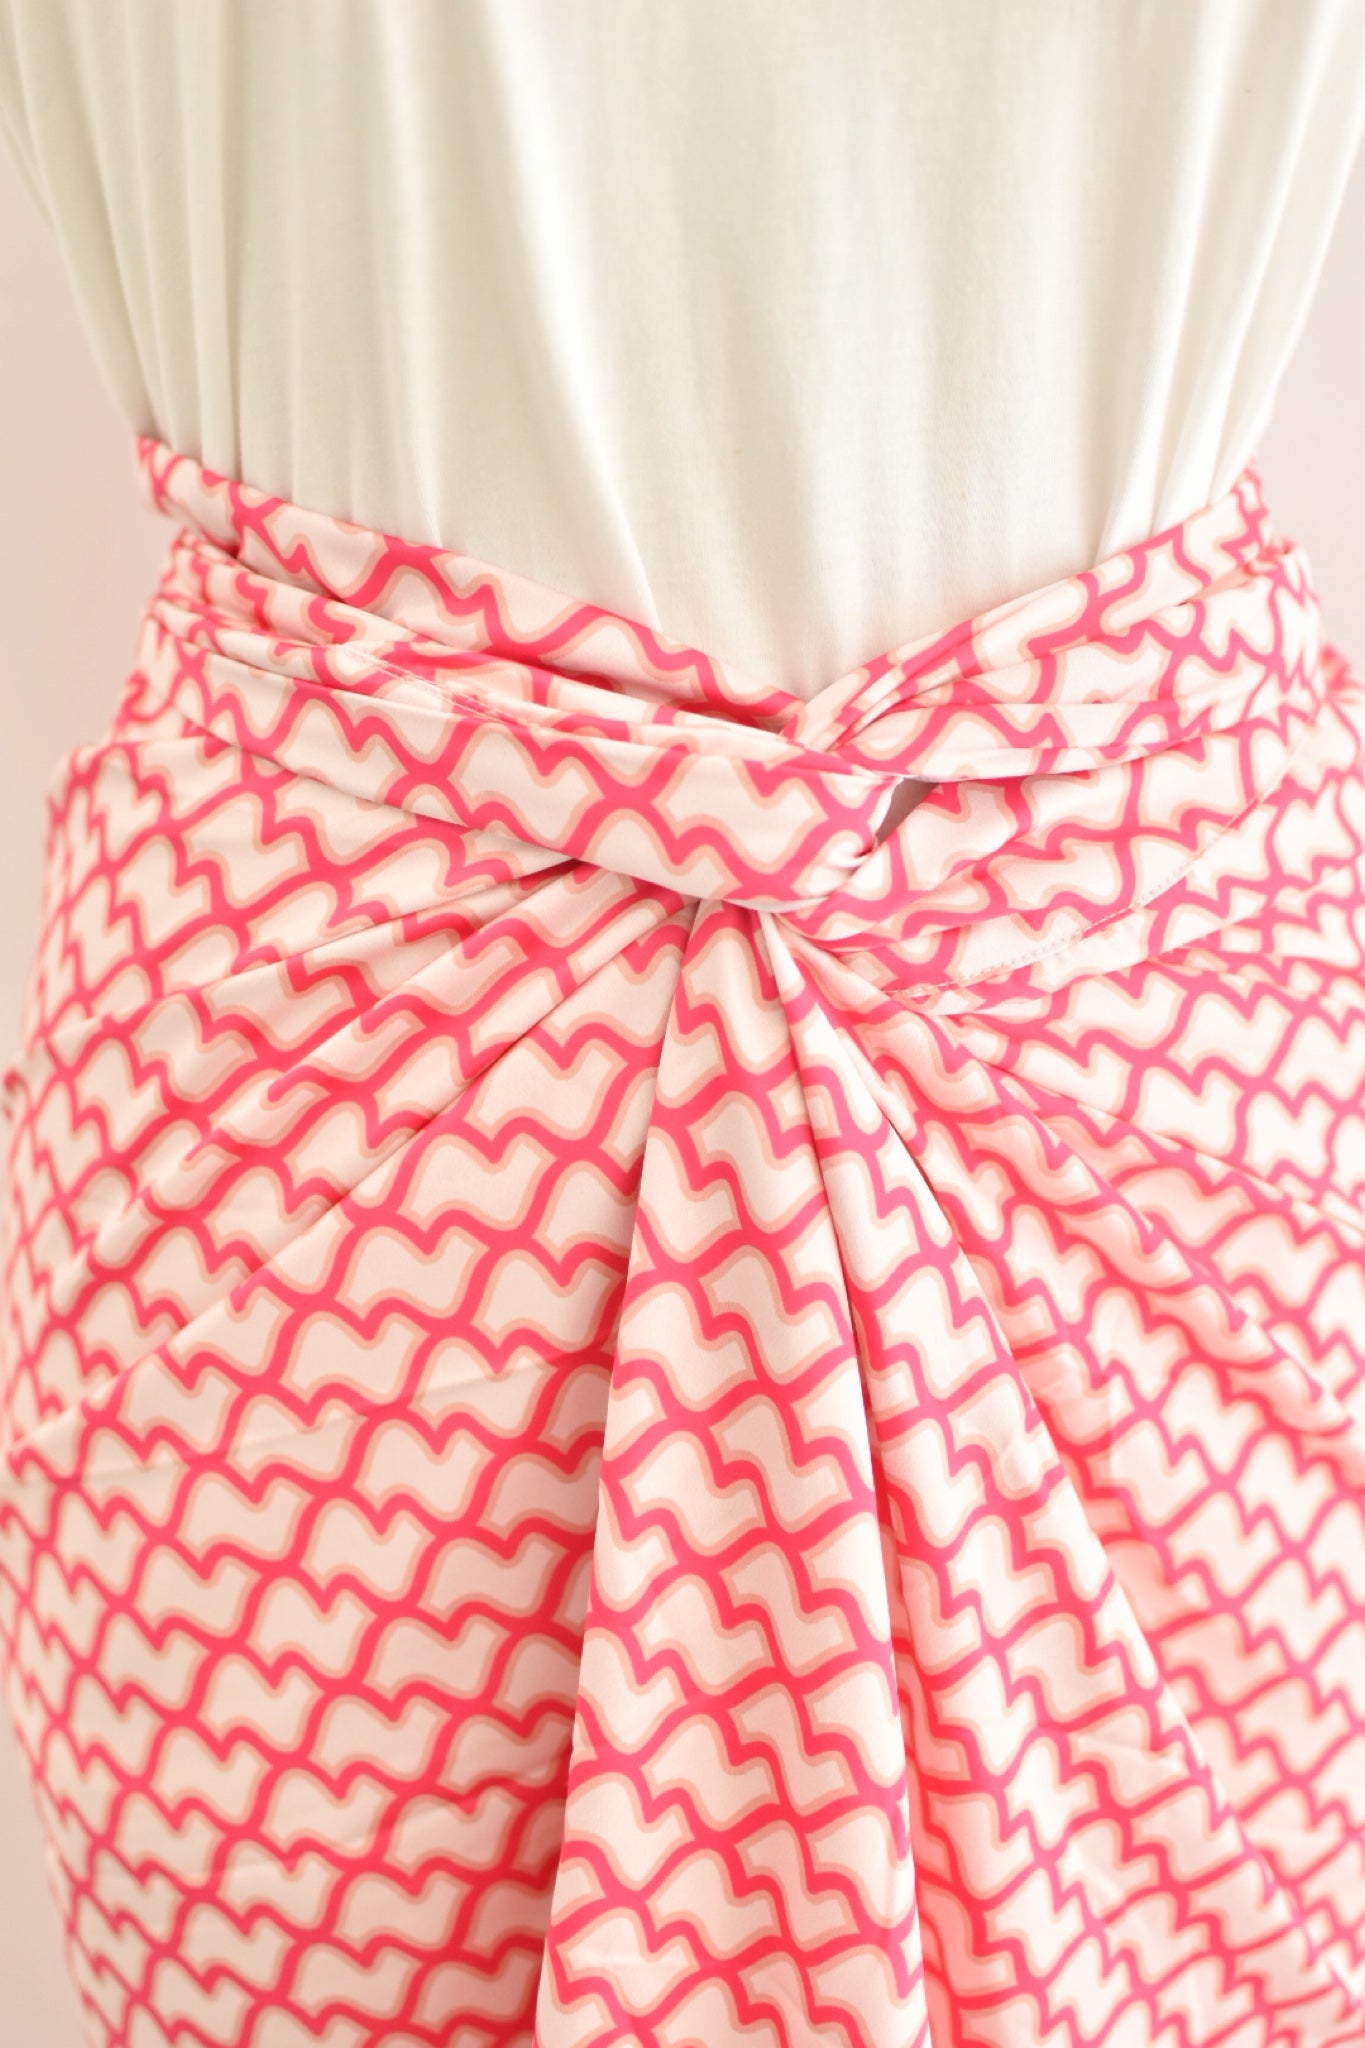 Belle Semi-Instant Pario Skirt